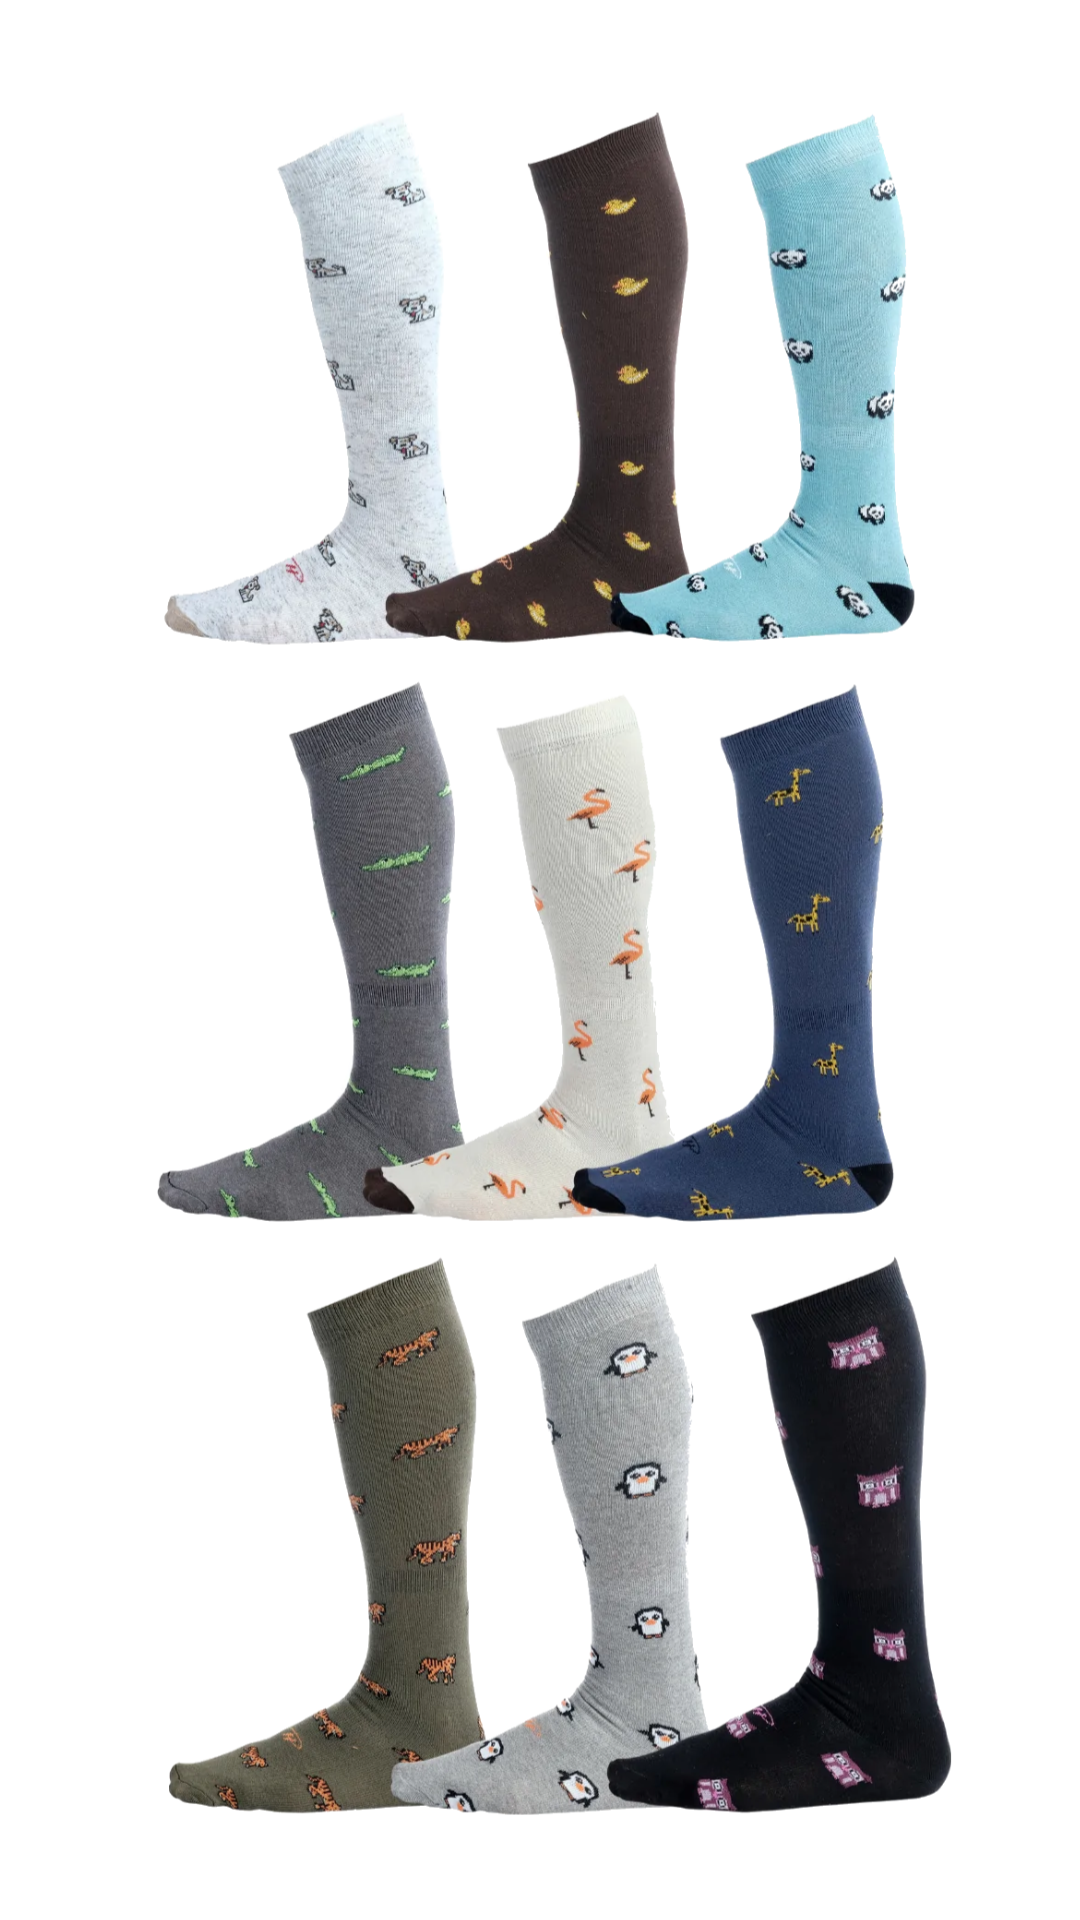 Dog socks, duck socks, panda socks, crocodile socks, flamingo socks, giraffe socks, tiger socks, penguin socks, owl socks